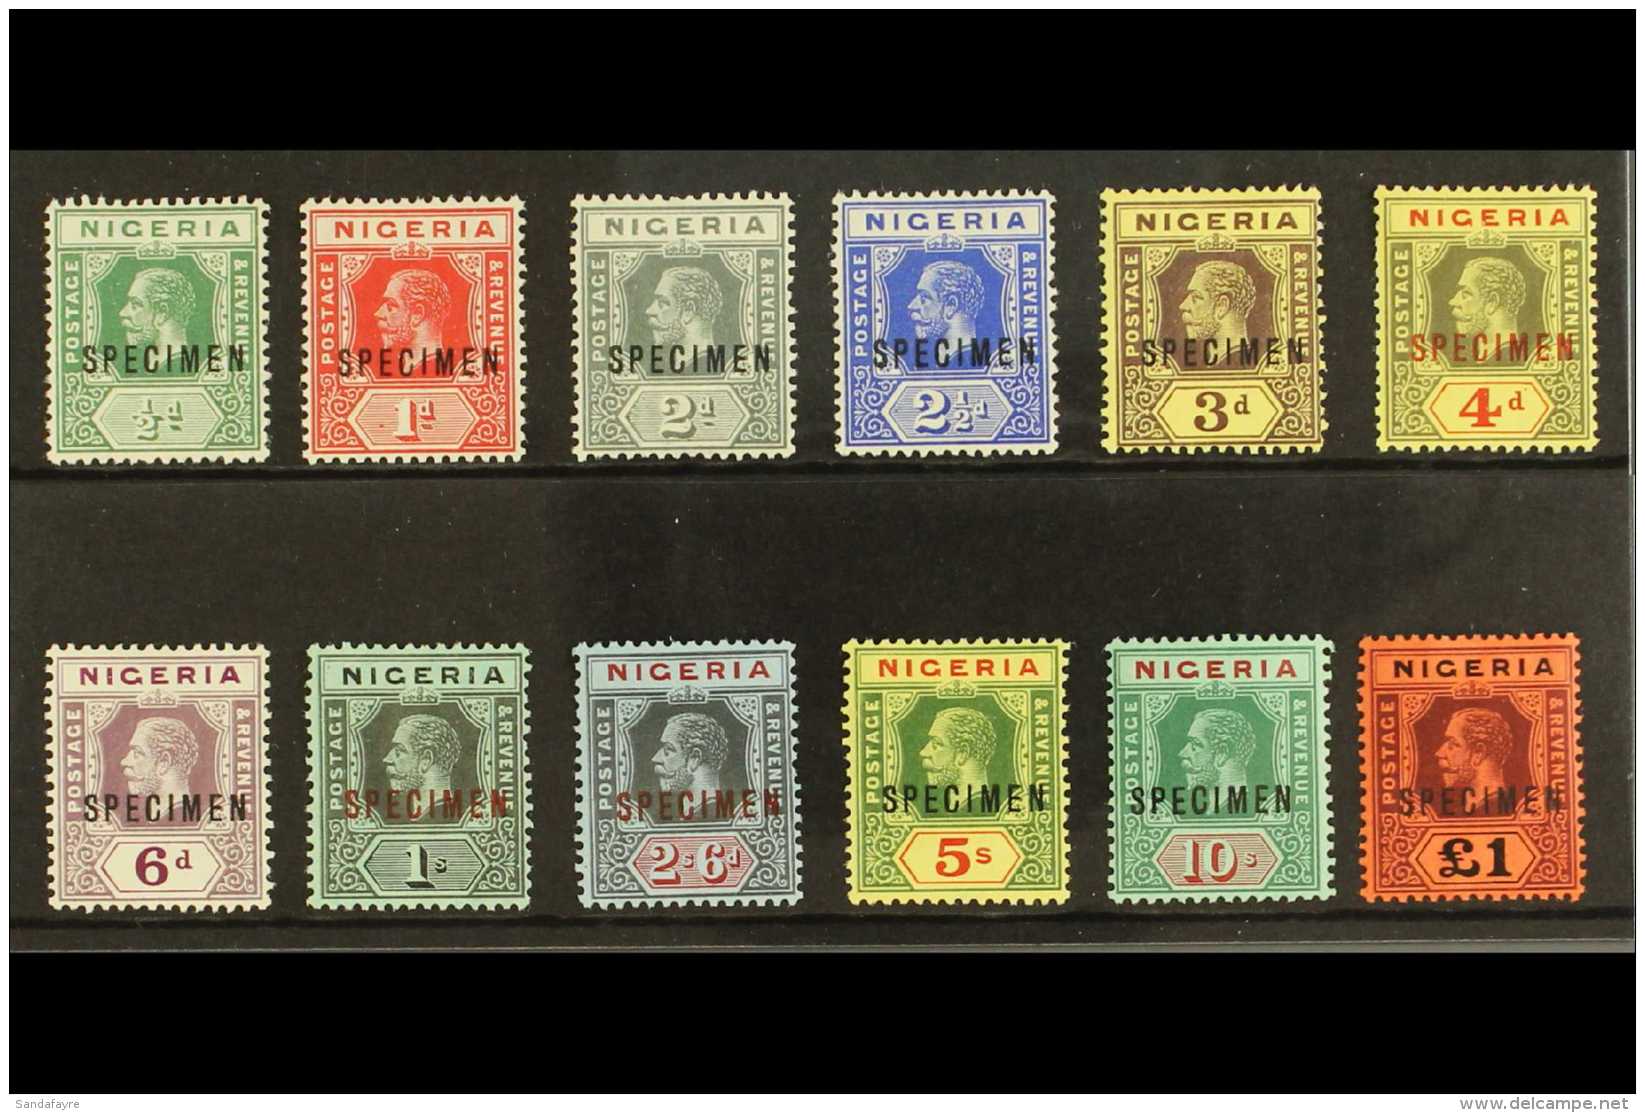 1914 Wmk Crown CA Definitives Set Opt'd "SPECIMEN", SG 1s/12s, Never Hinged Mint. Superb (12 Stamps) For More... - Nigeria (...-1960)